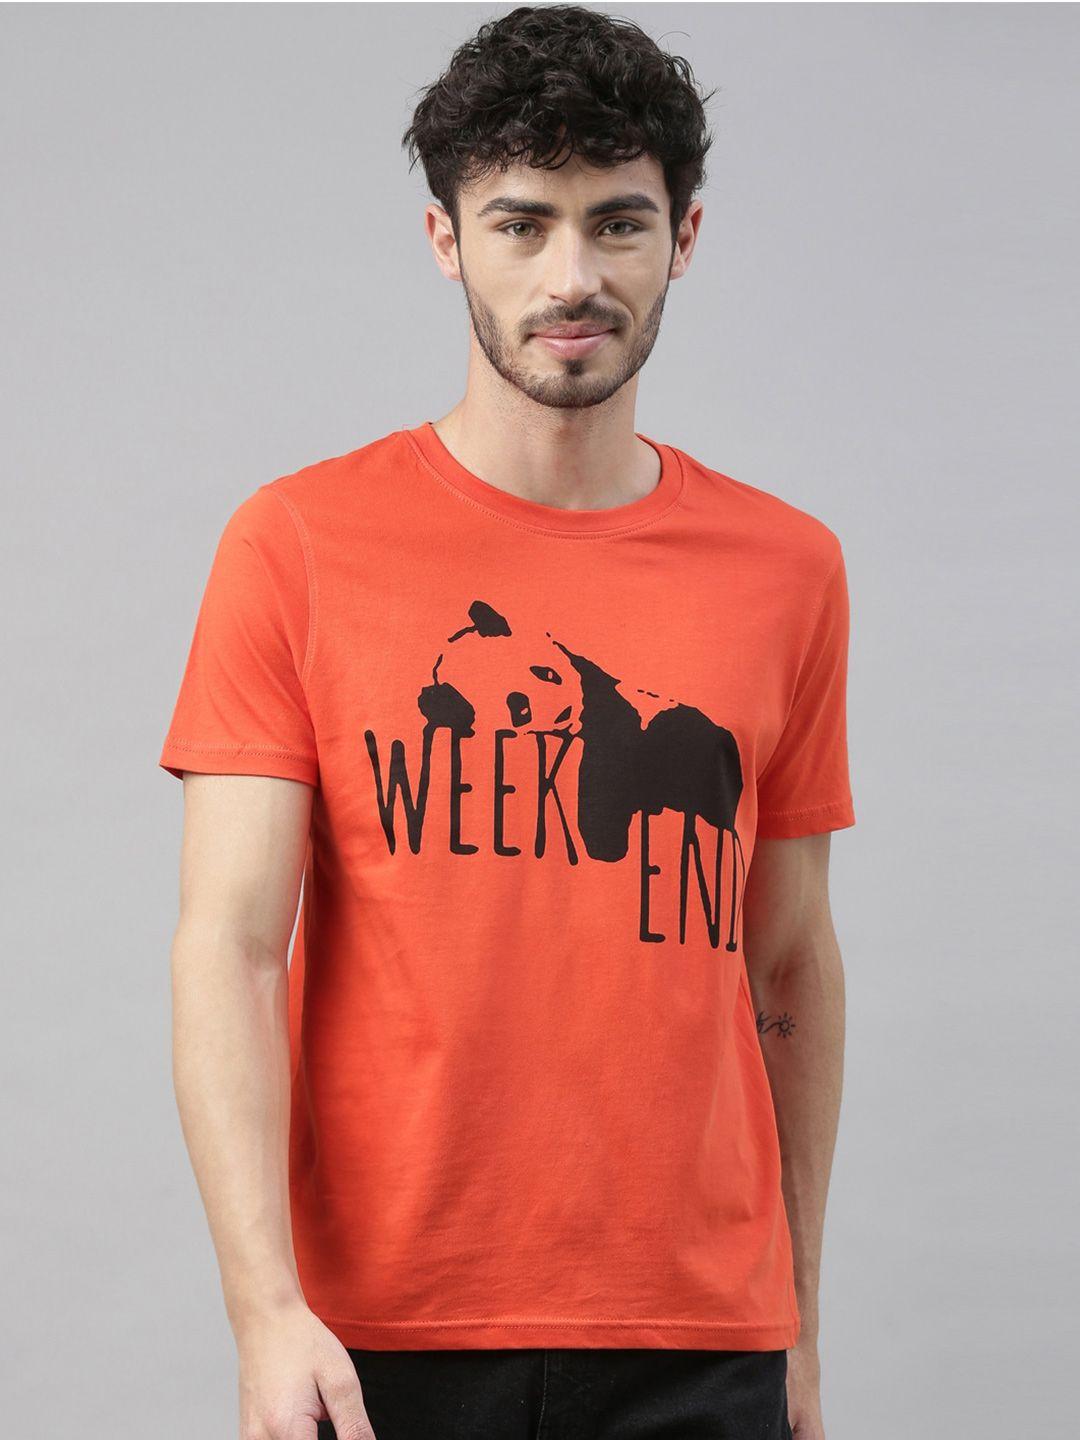 bushirt men orange printed round neck t-shirt